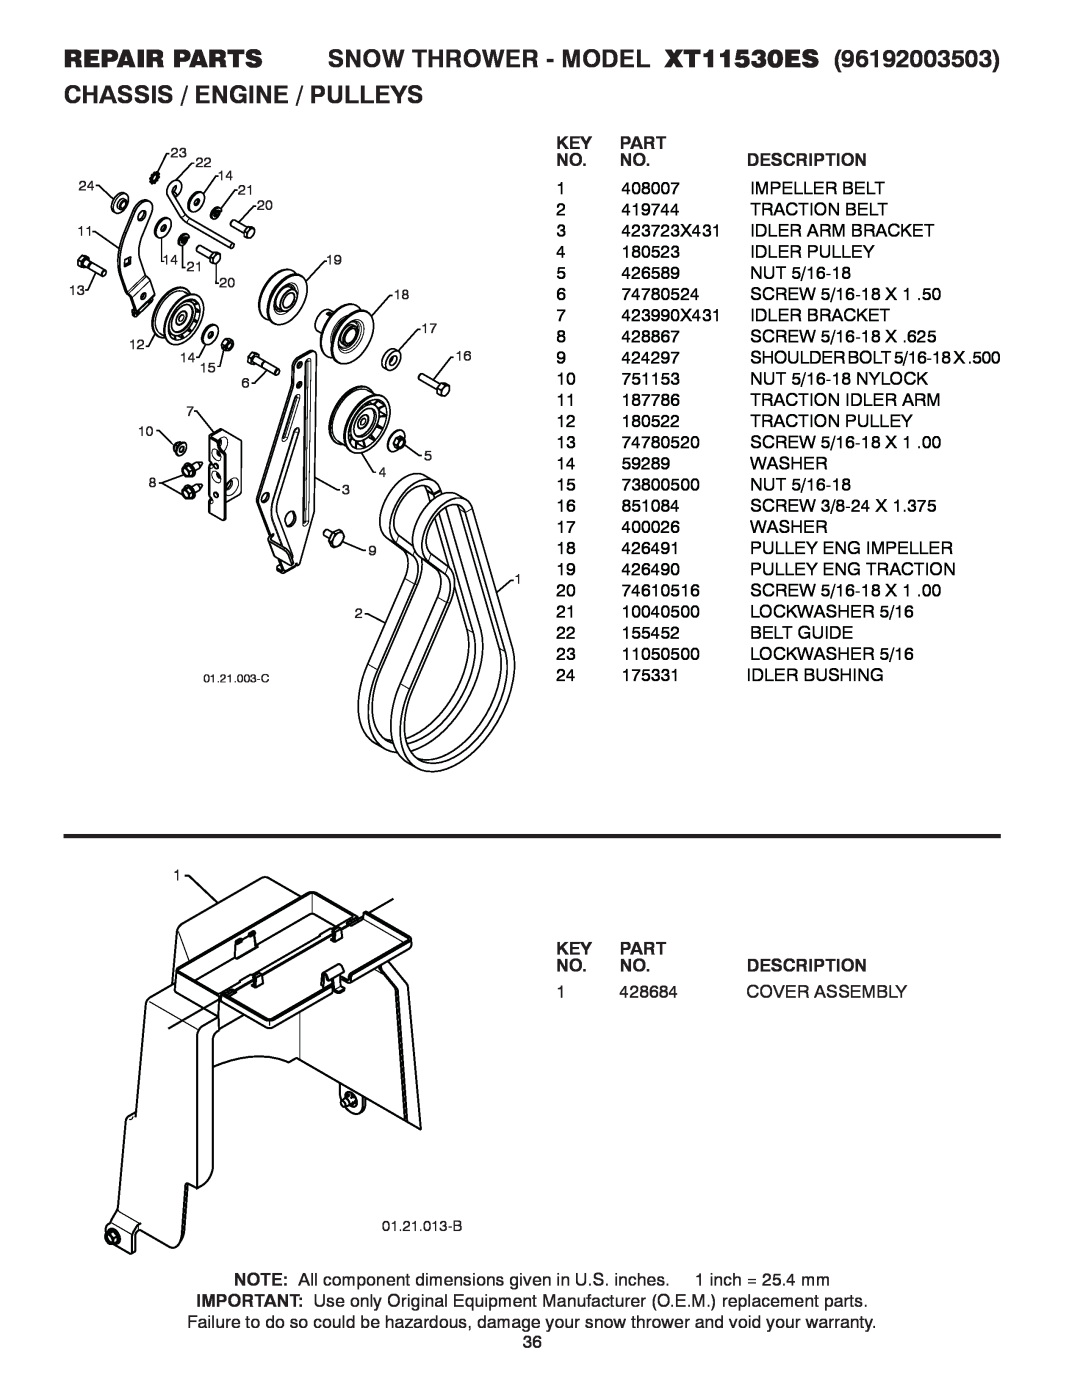 Poulan 437970 REPAIR PARTS SNOW THROWER - MODEL XT11530ES, Chassis / Engine / Pulleys, Part, Description, 428684 